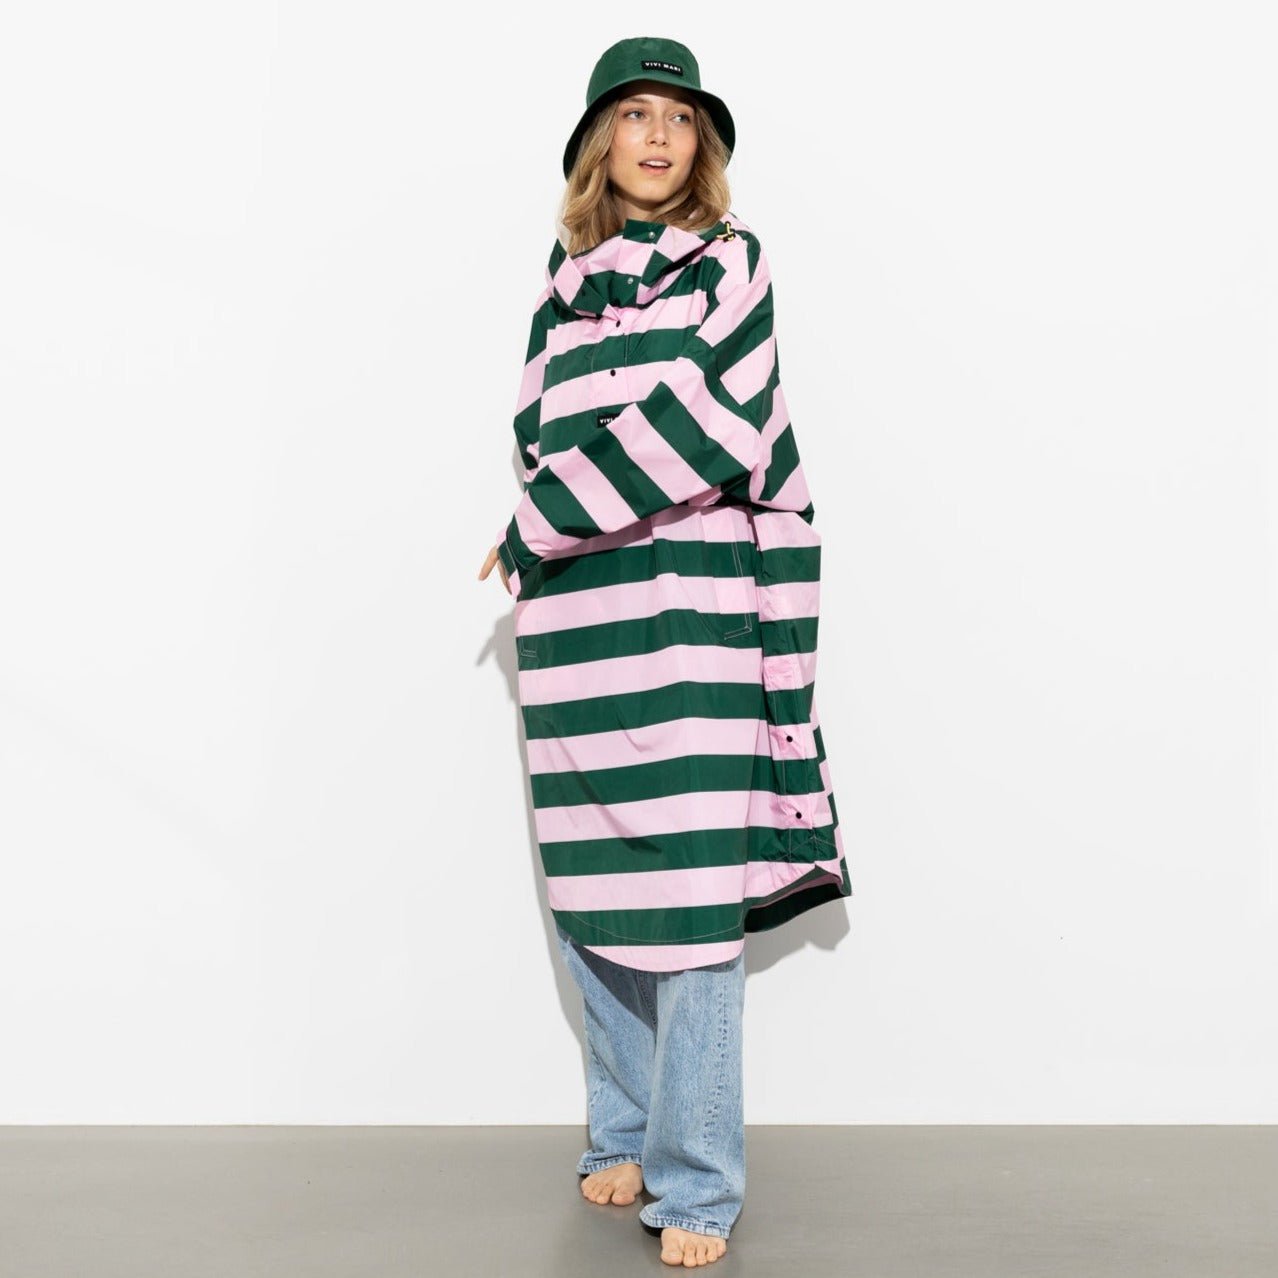 Raincoat bold stripes - green/rosé - VIVI MARI